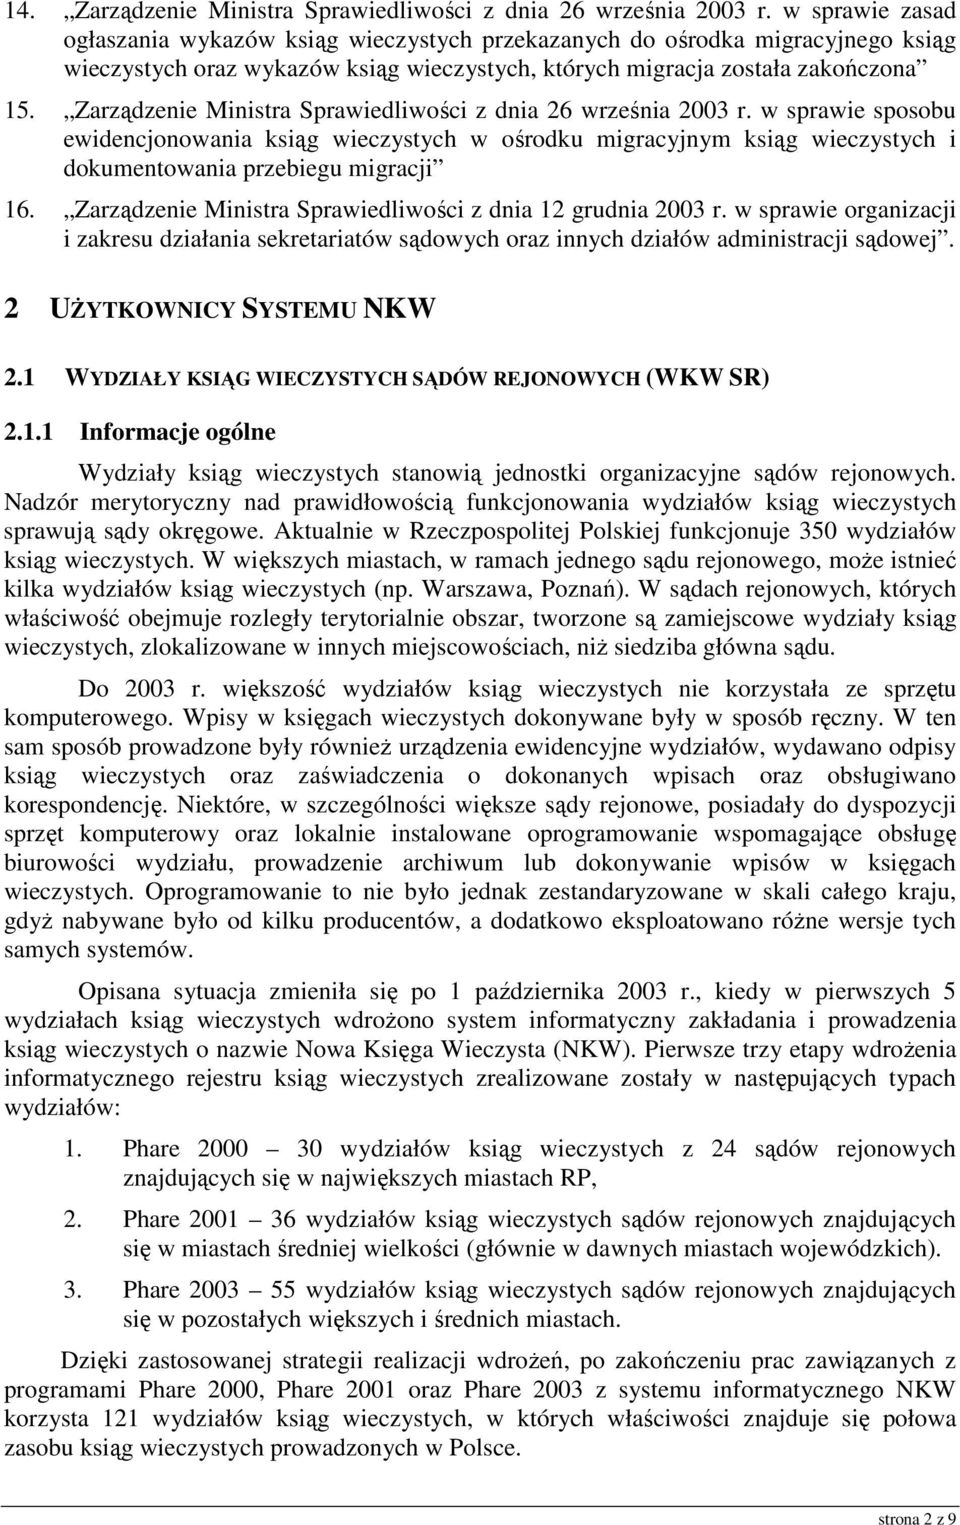 Zarządzenie Ministra Sprawiedliwości z dnia 26 września 2003 r. w sprawie sposobu ewidencjonowania ksiąg wieczystych w ośrodku migracyjnym ksiąg wieczystych i dokumentowania przebiegu migracji 16.